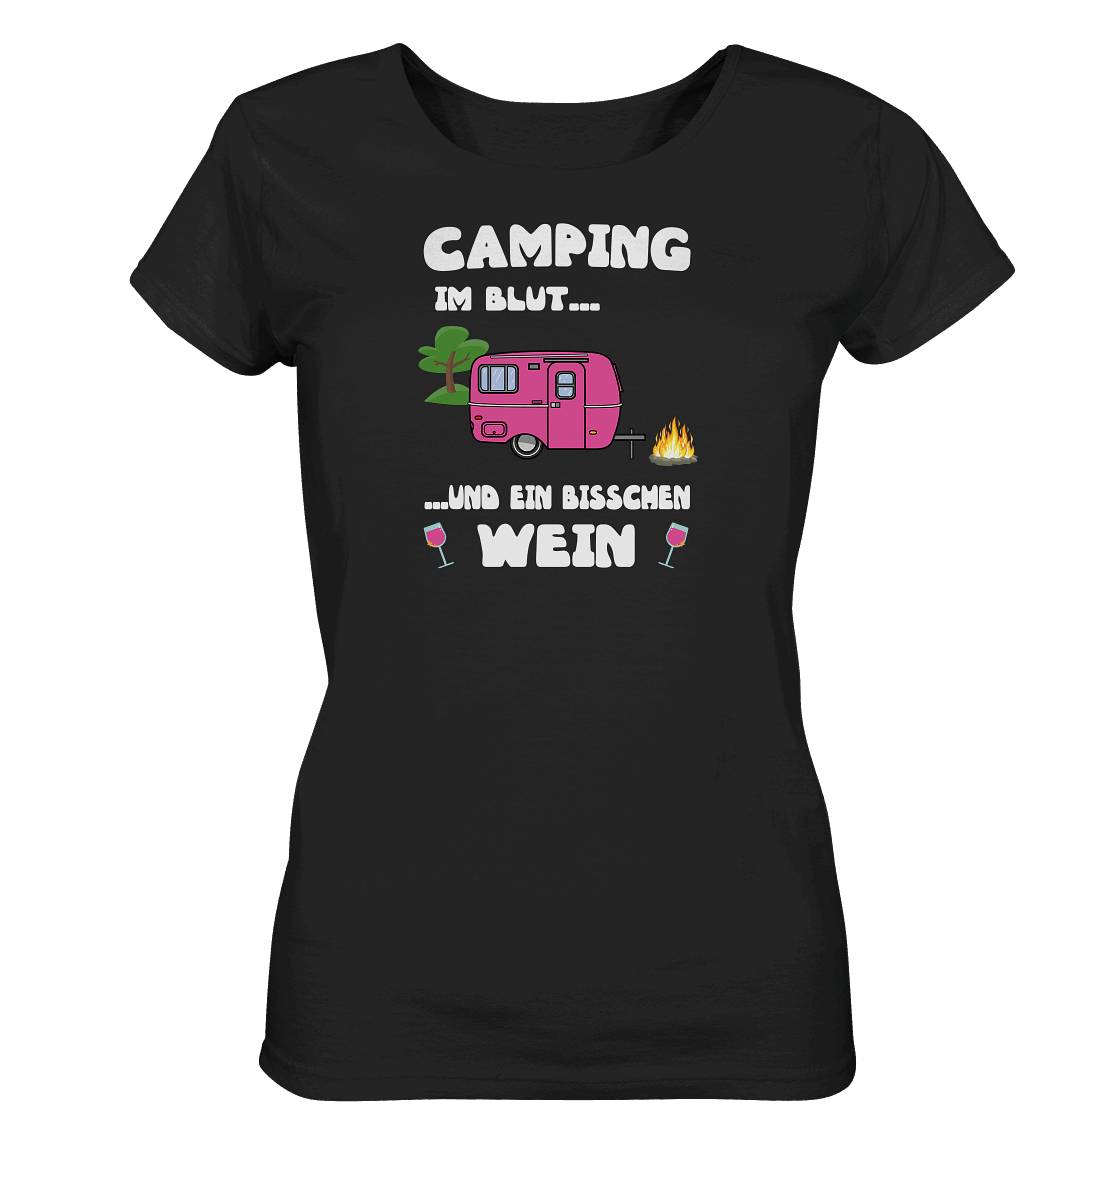 Camping im Blut ... und ein bisschen Wein - Ladies Organic Shirt